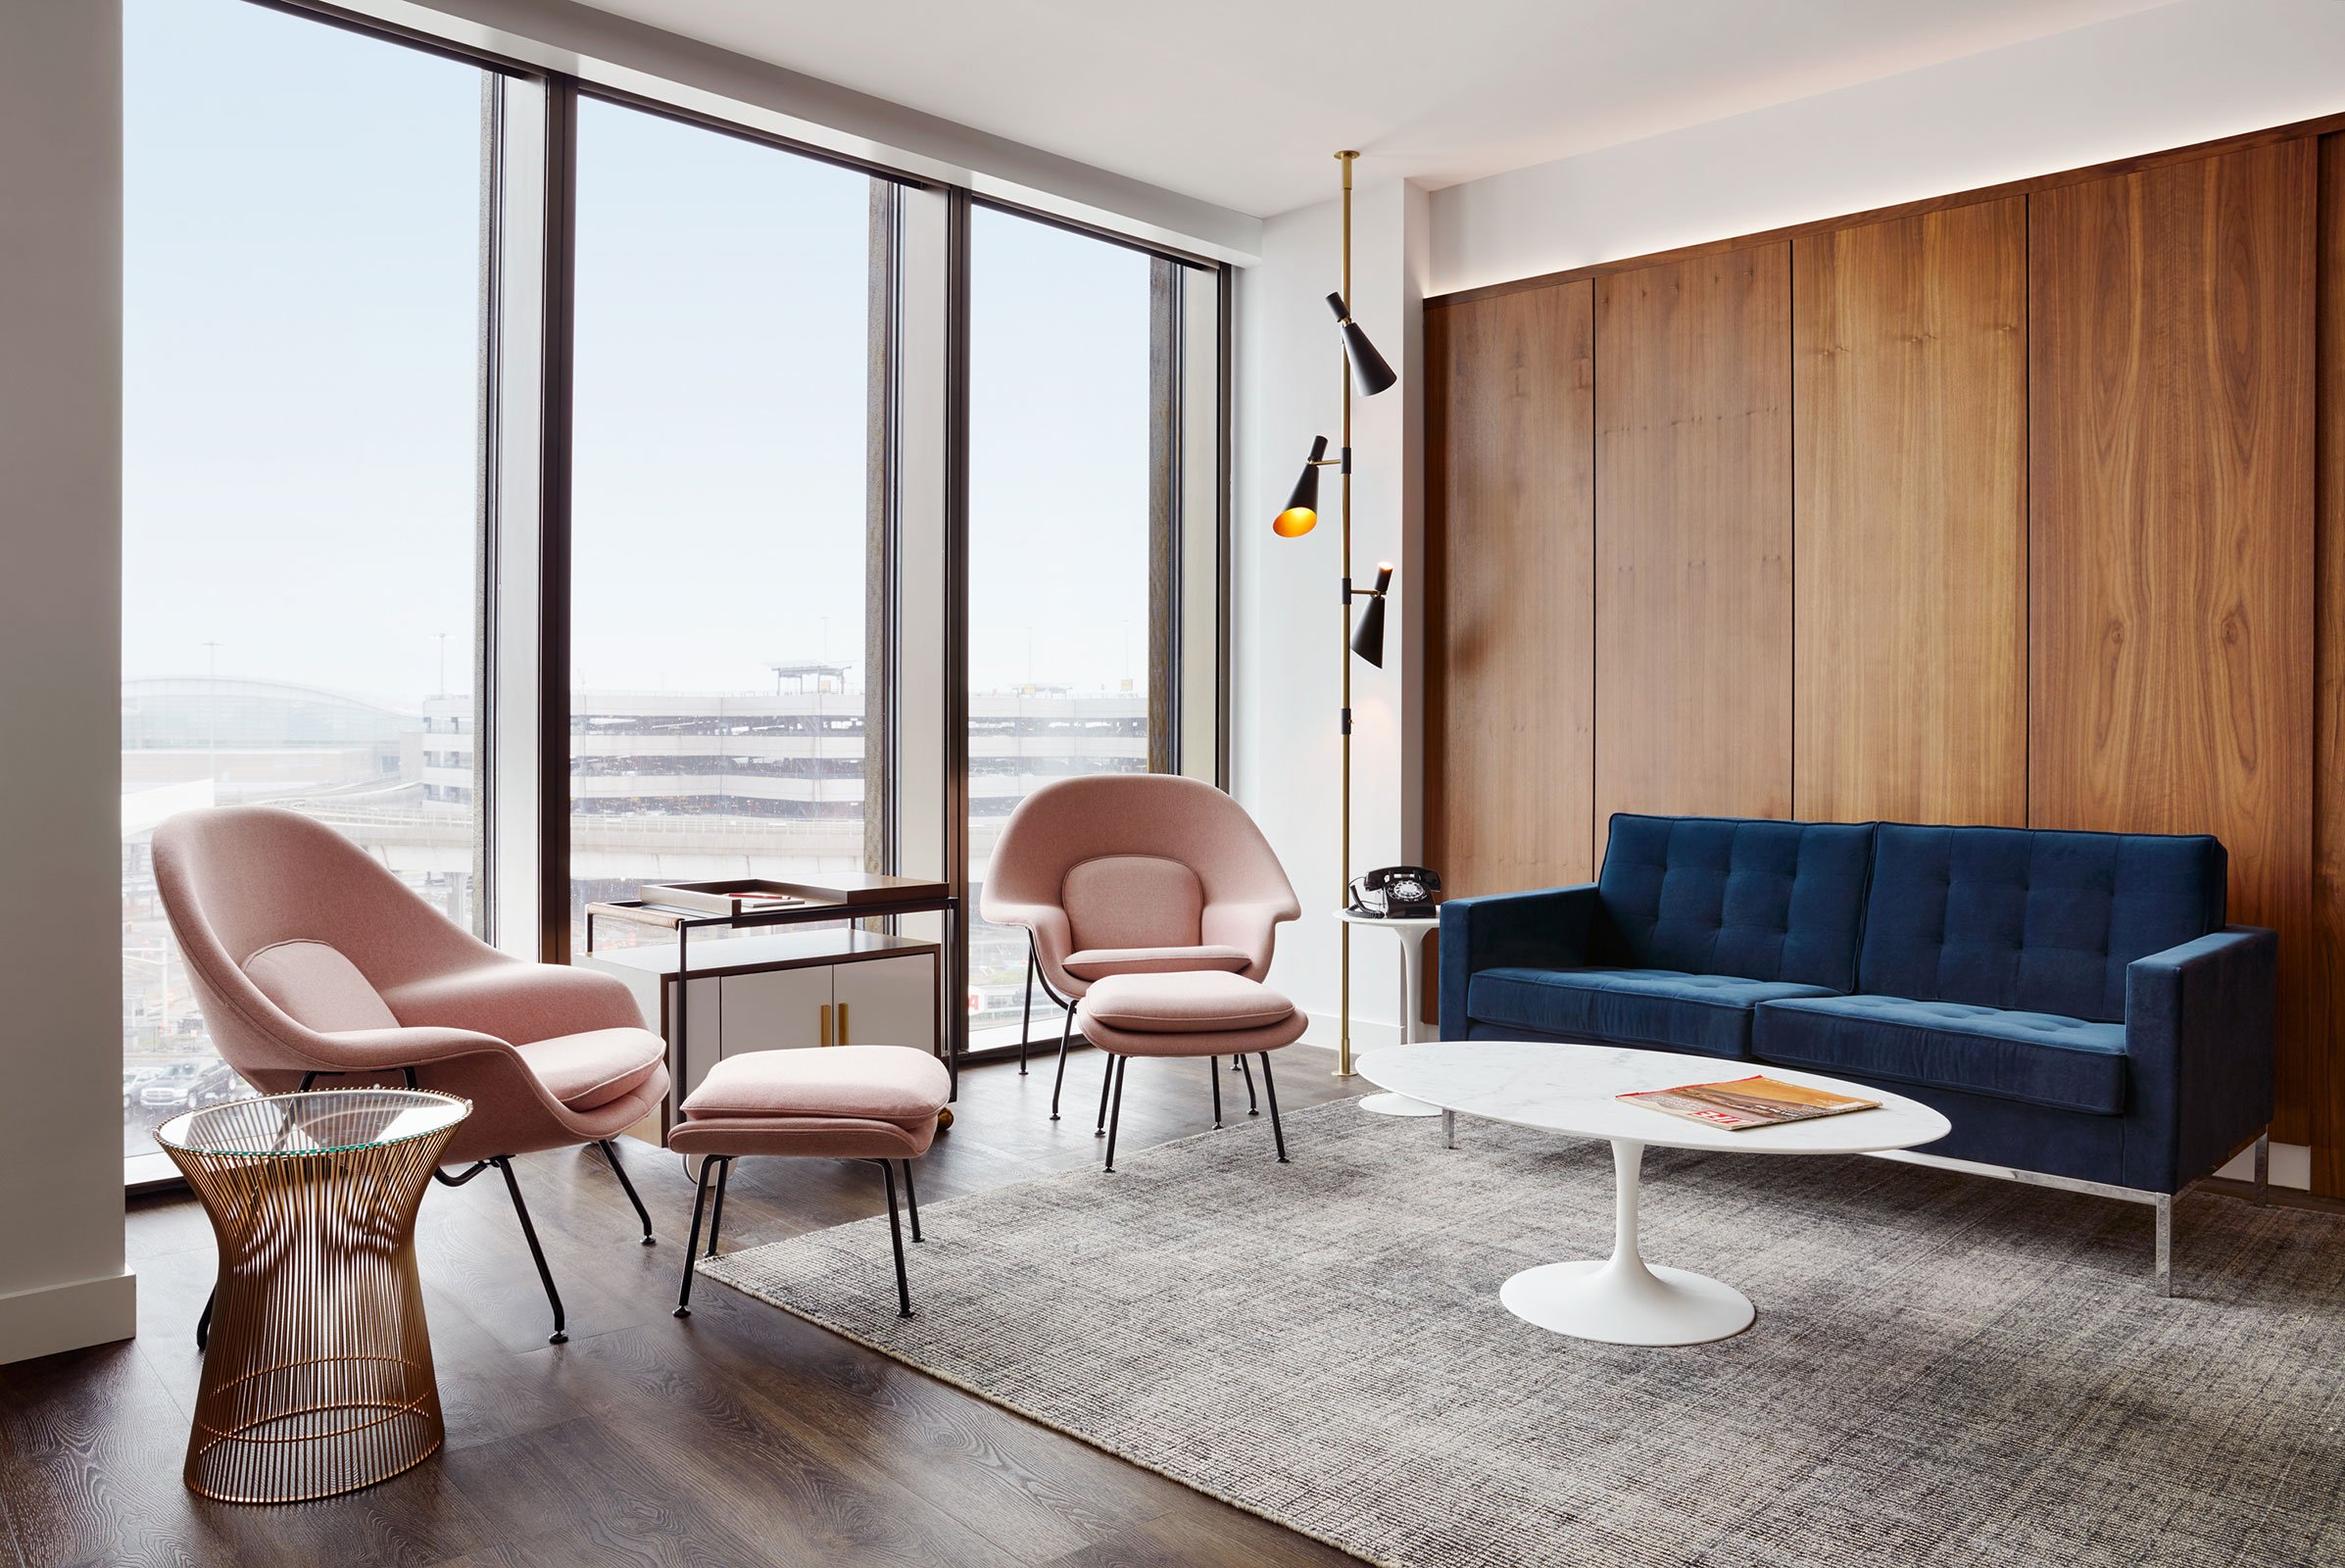 The Eero Saarinen Presidential Suite With Historic TWA View